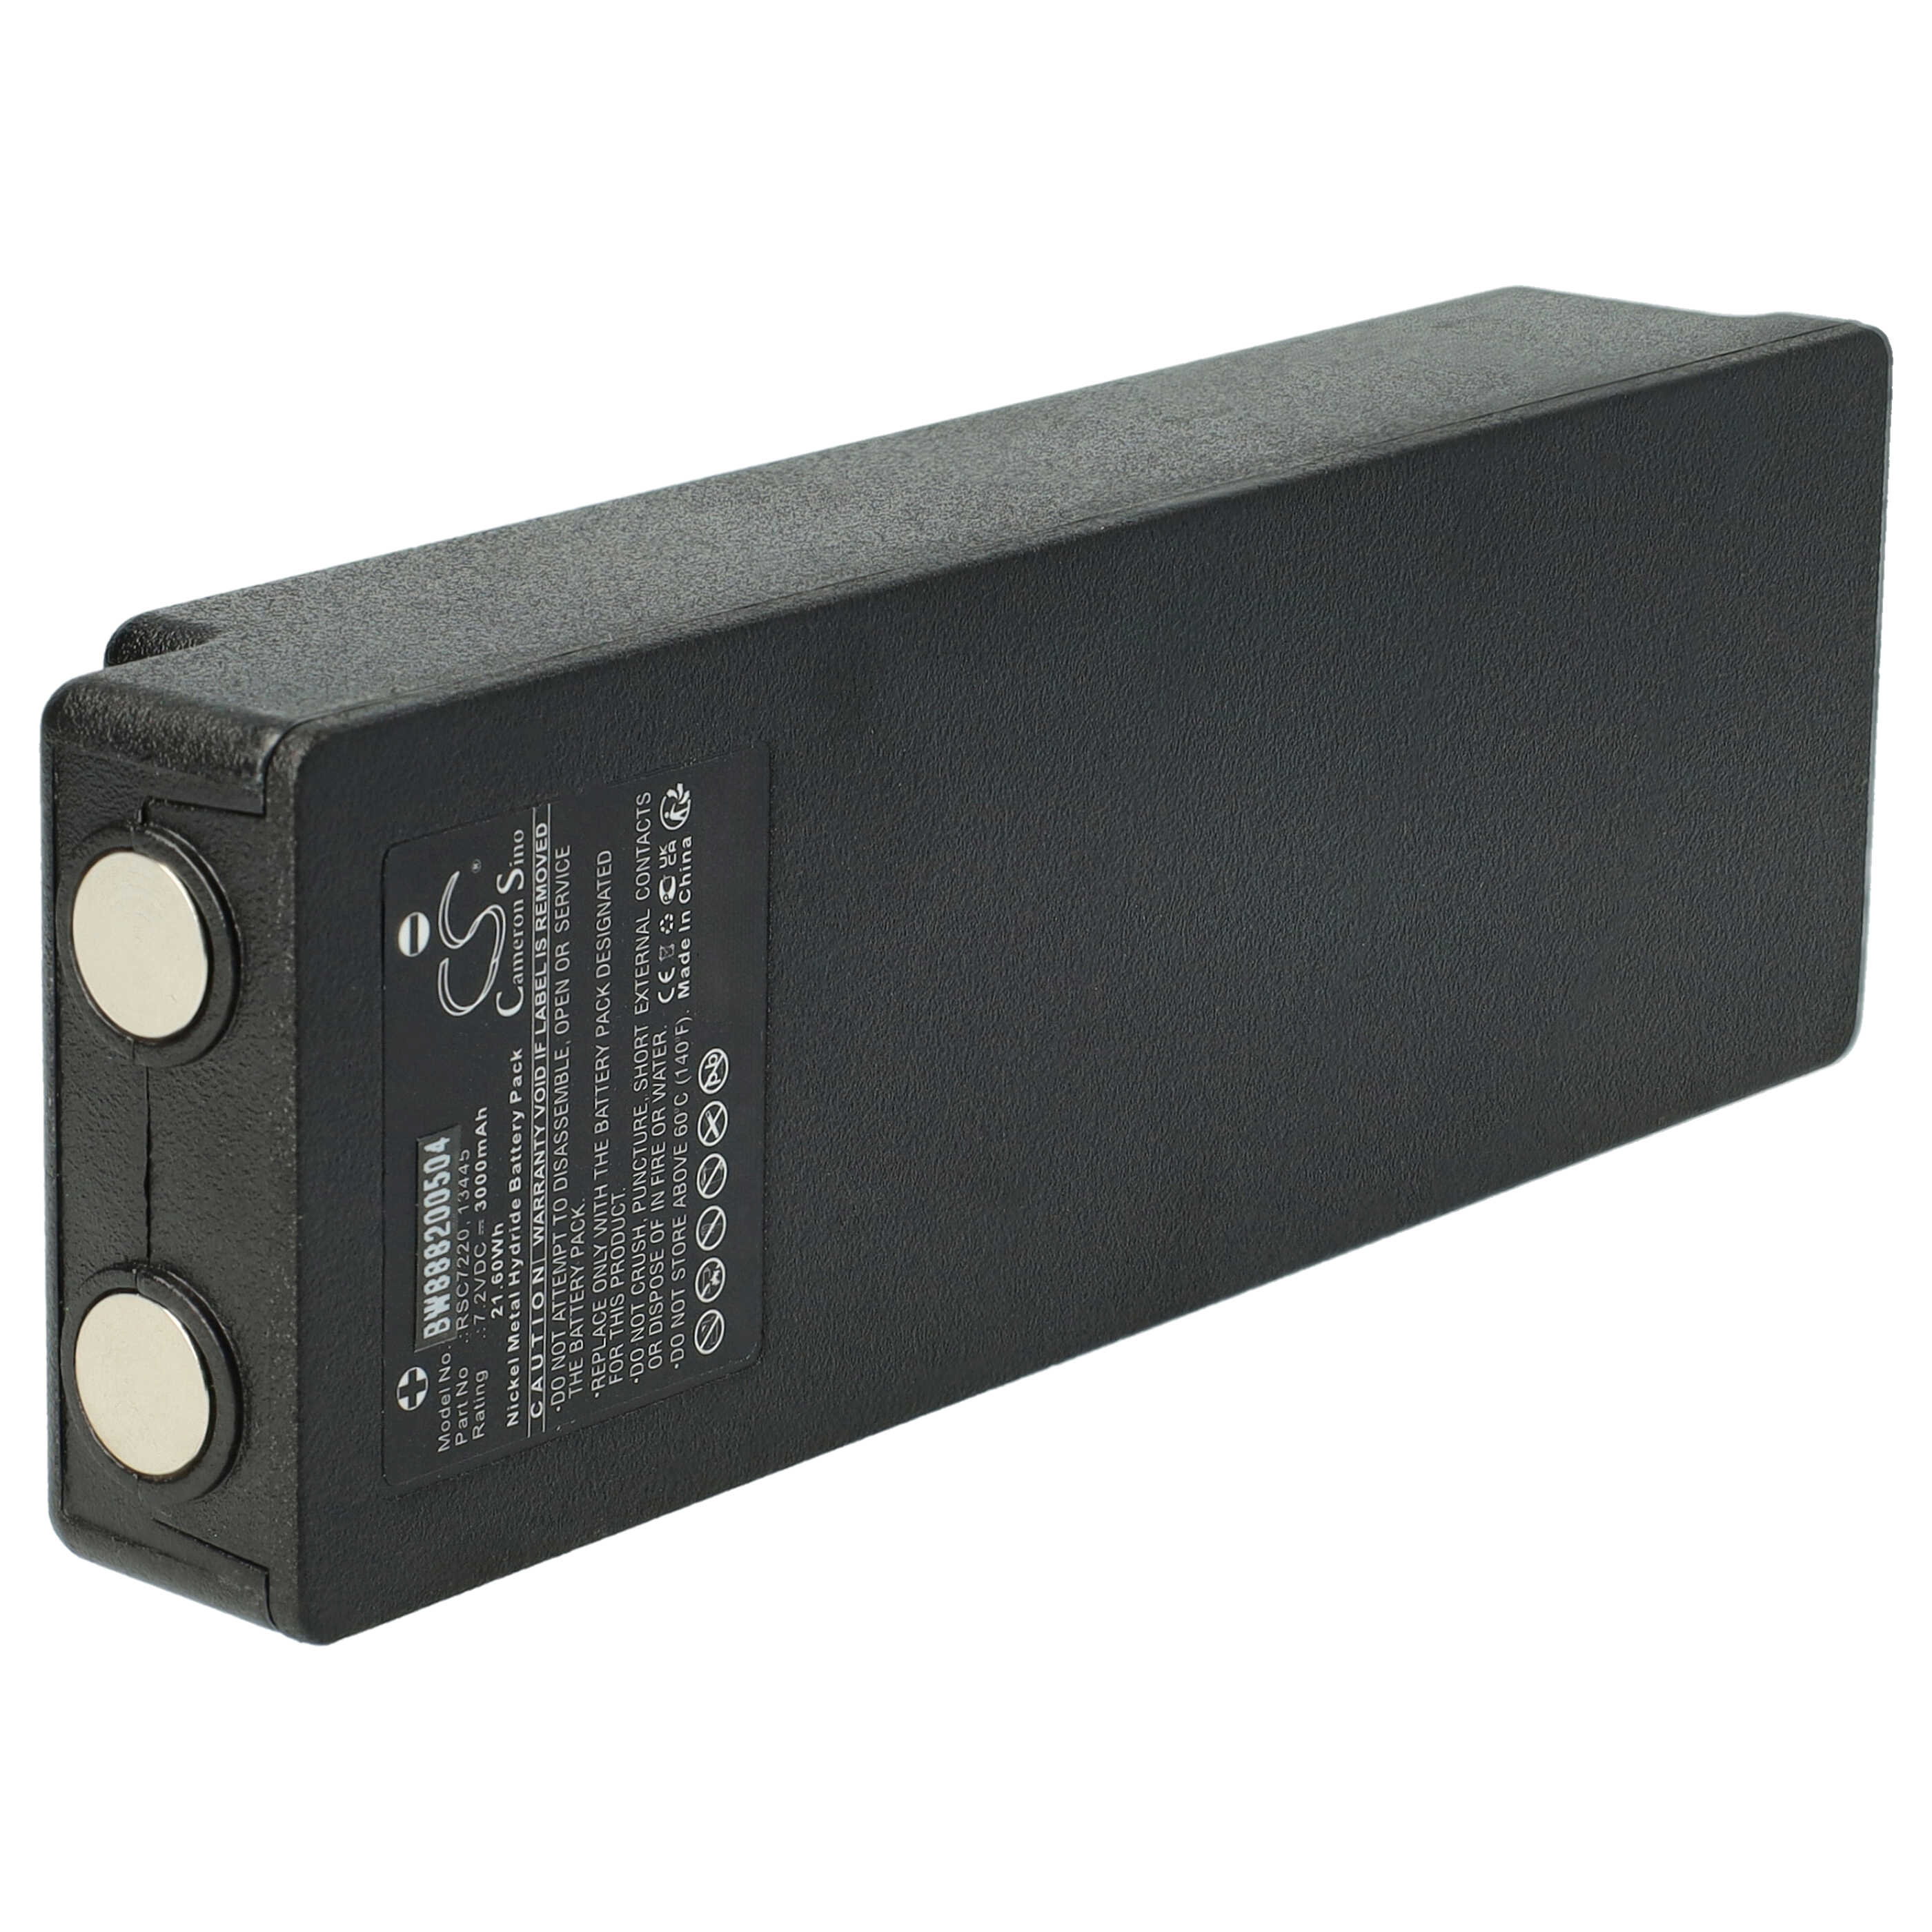 Batterie remplace Palfinger 17162, 16131, 1026, 13445 pour télécomande industrielle - 3000mAh 7,2V NiMH